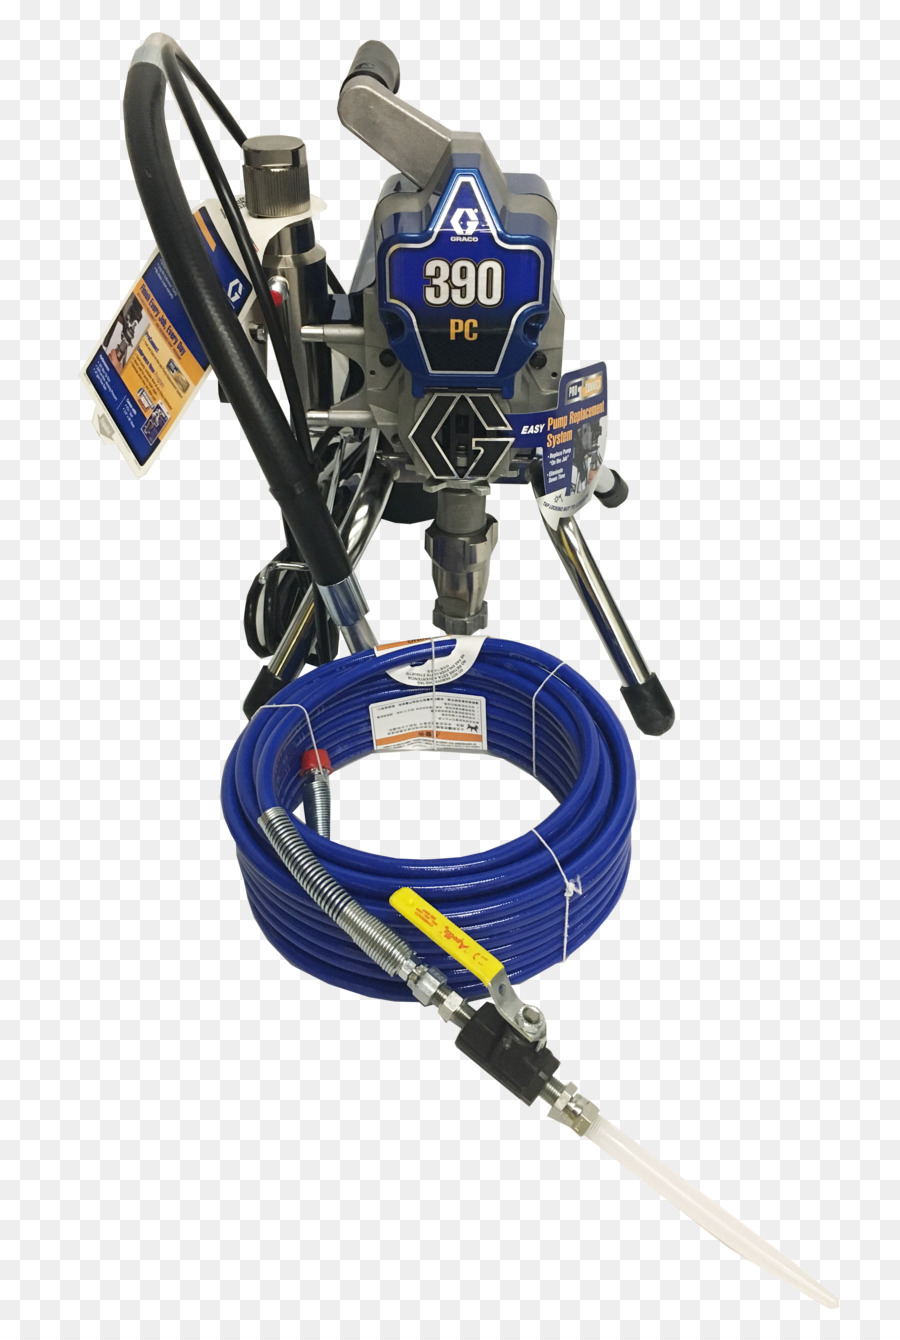 Elektronik Produkt Maschine - grout pump-drill